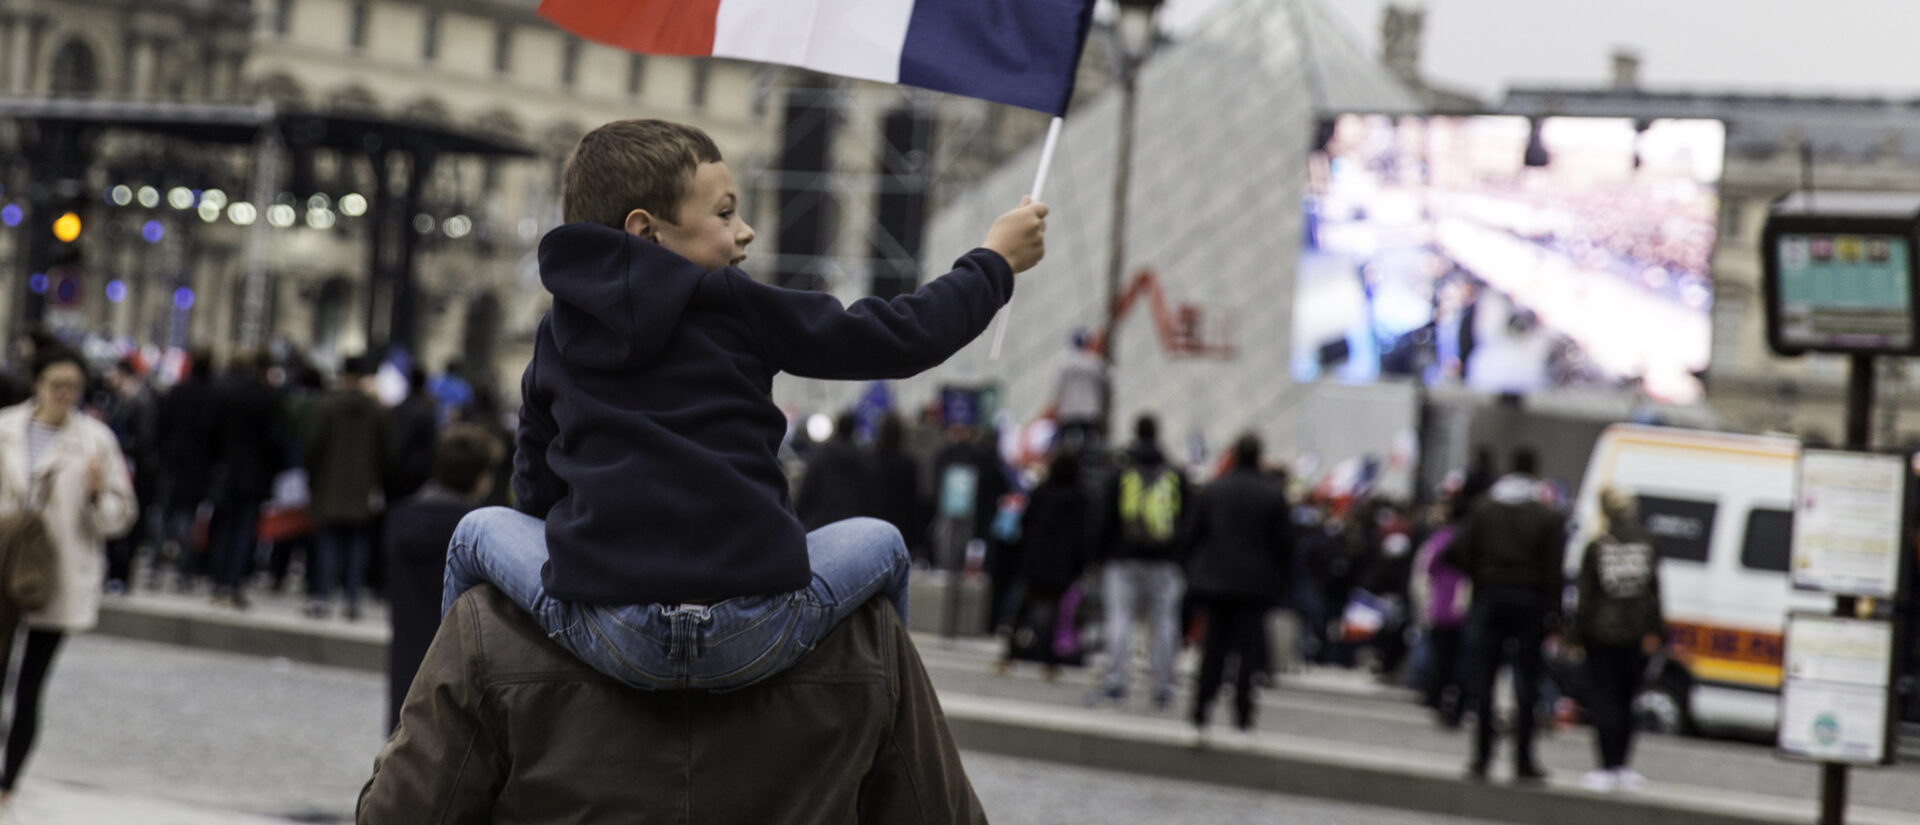 A l'approche des élections présidentielles françaises, pour un débat plus apaisé | © Lorie Shaull/Flickr/CC BY 2.0